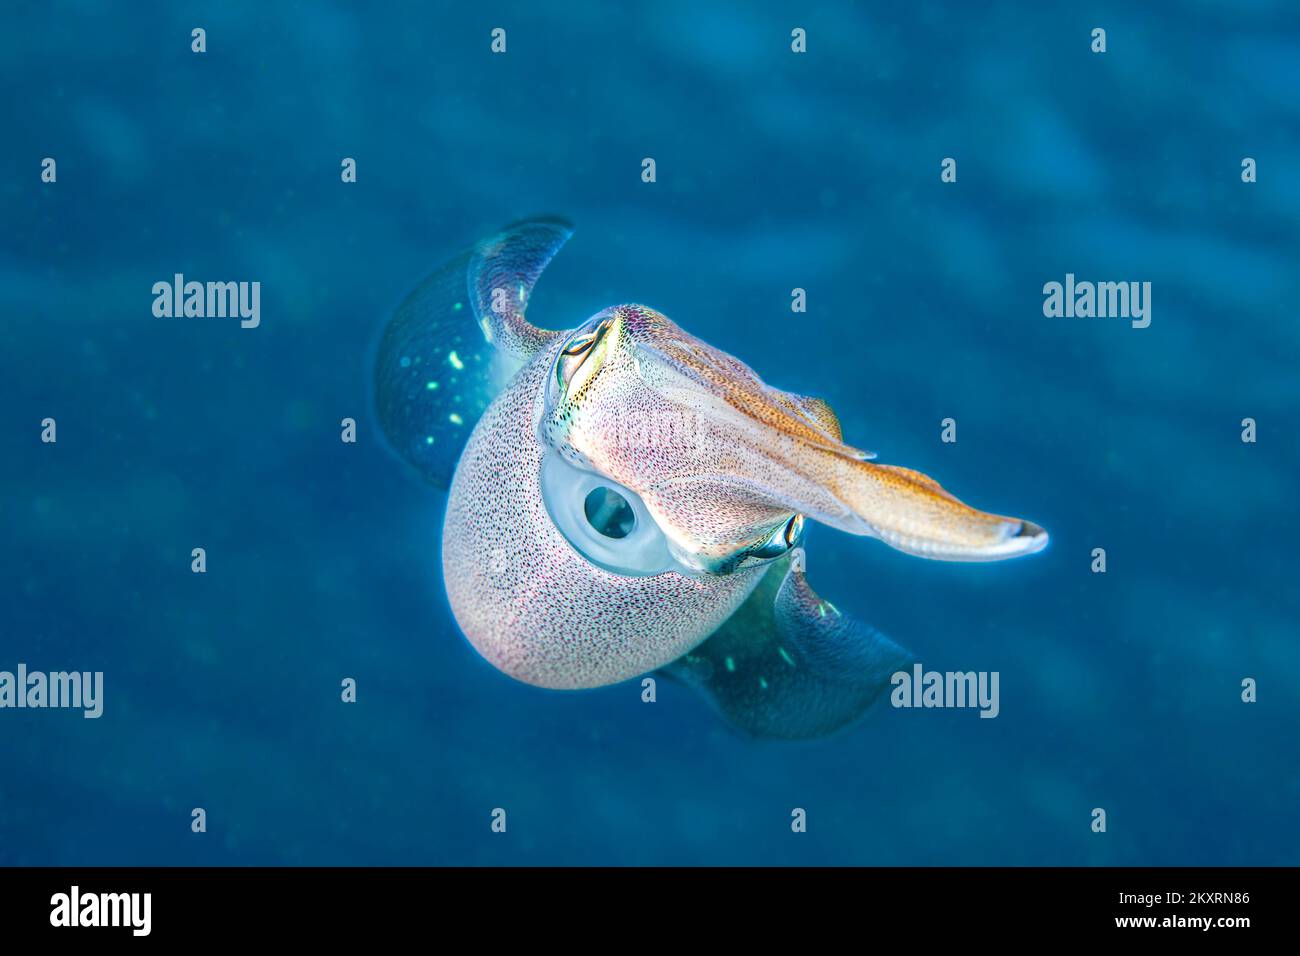 Karibischer Riff Tintenfisch, Sepioteuthis Sepioidea, wird allgemein in seichte Ufer Wasser der Karibik beobachtet. Stockfoto